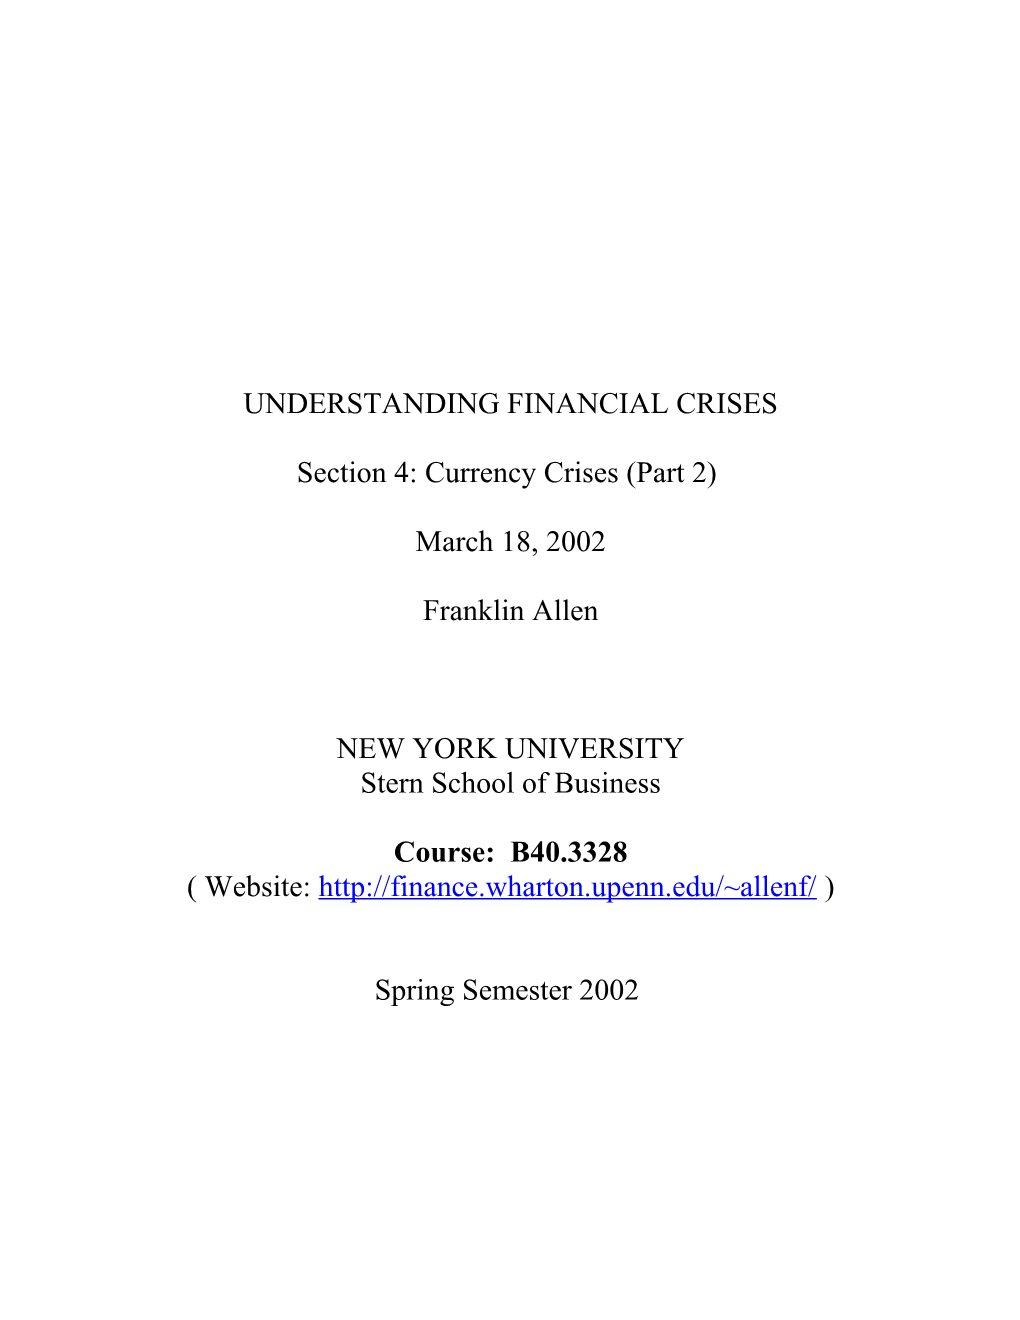 Understanding Financial Crises s1